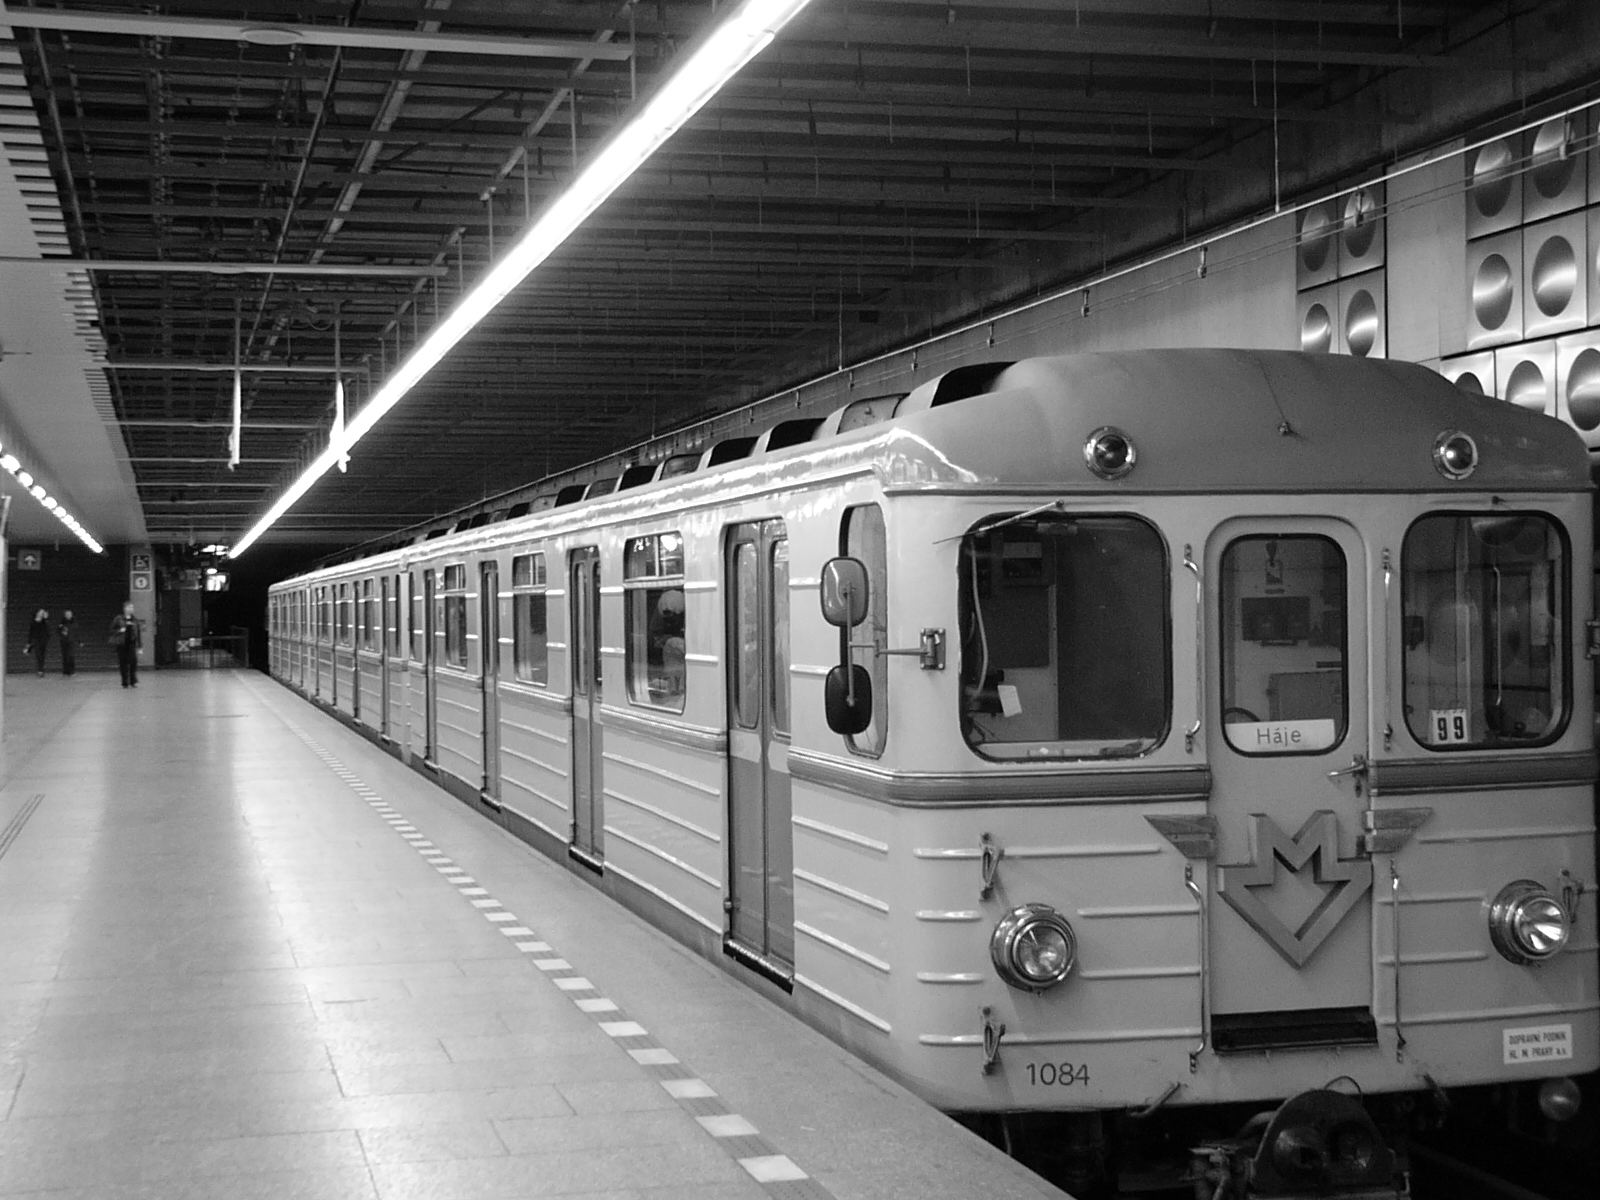 Az Ečs típusú szovjet gyártmínyú metrószerelvény Háje végállomáson<br>(fotók: wikipedia)